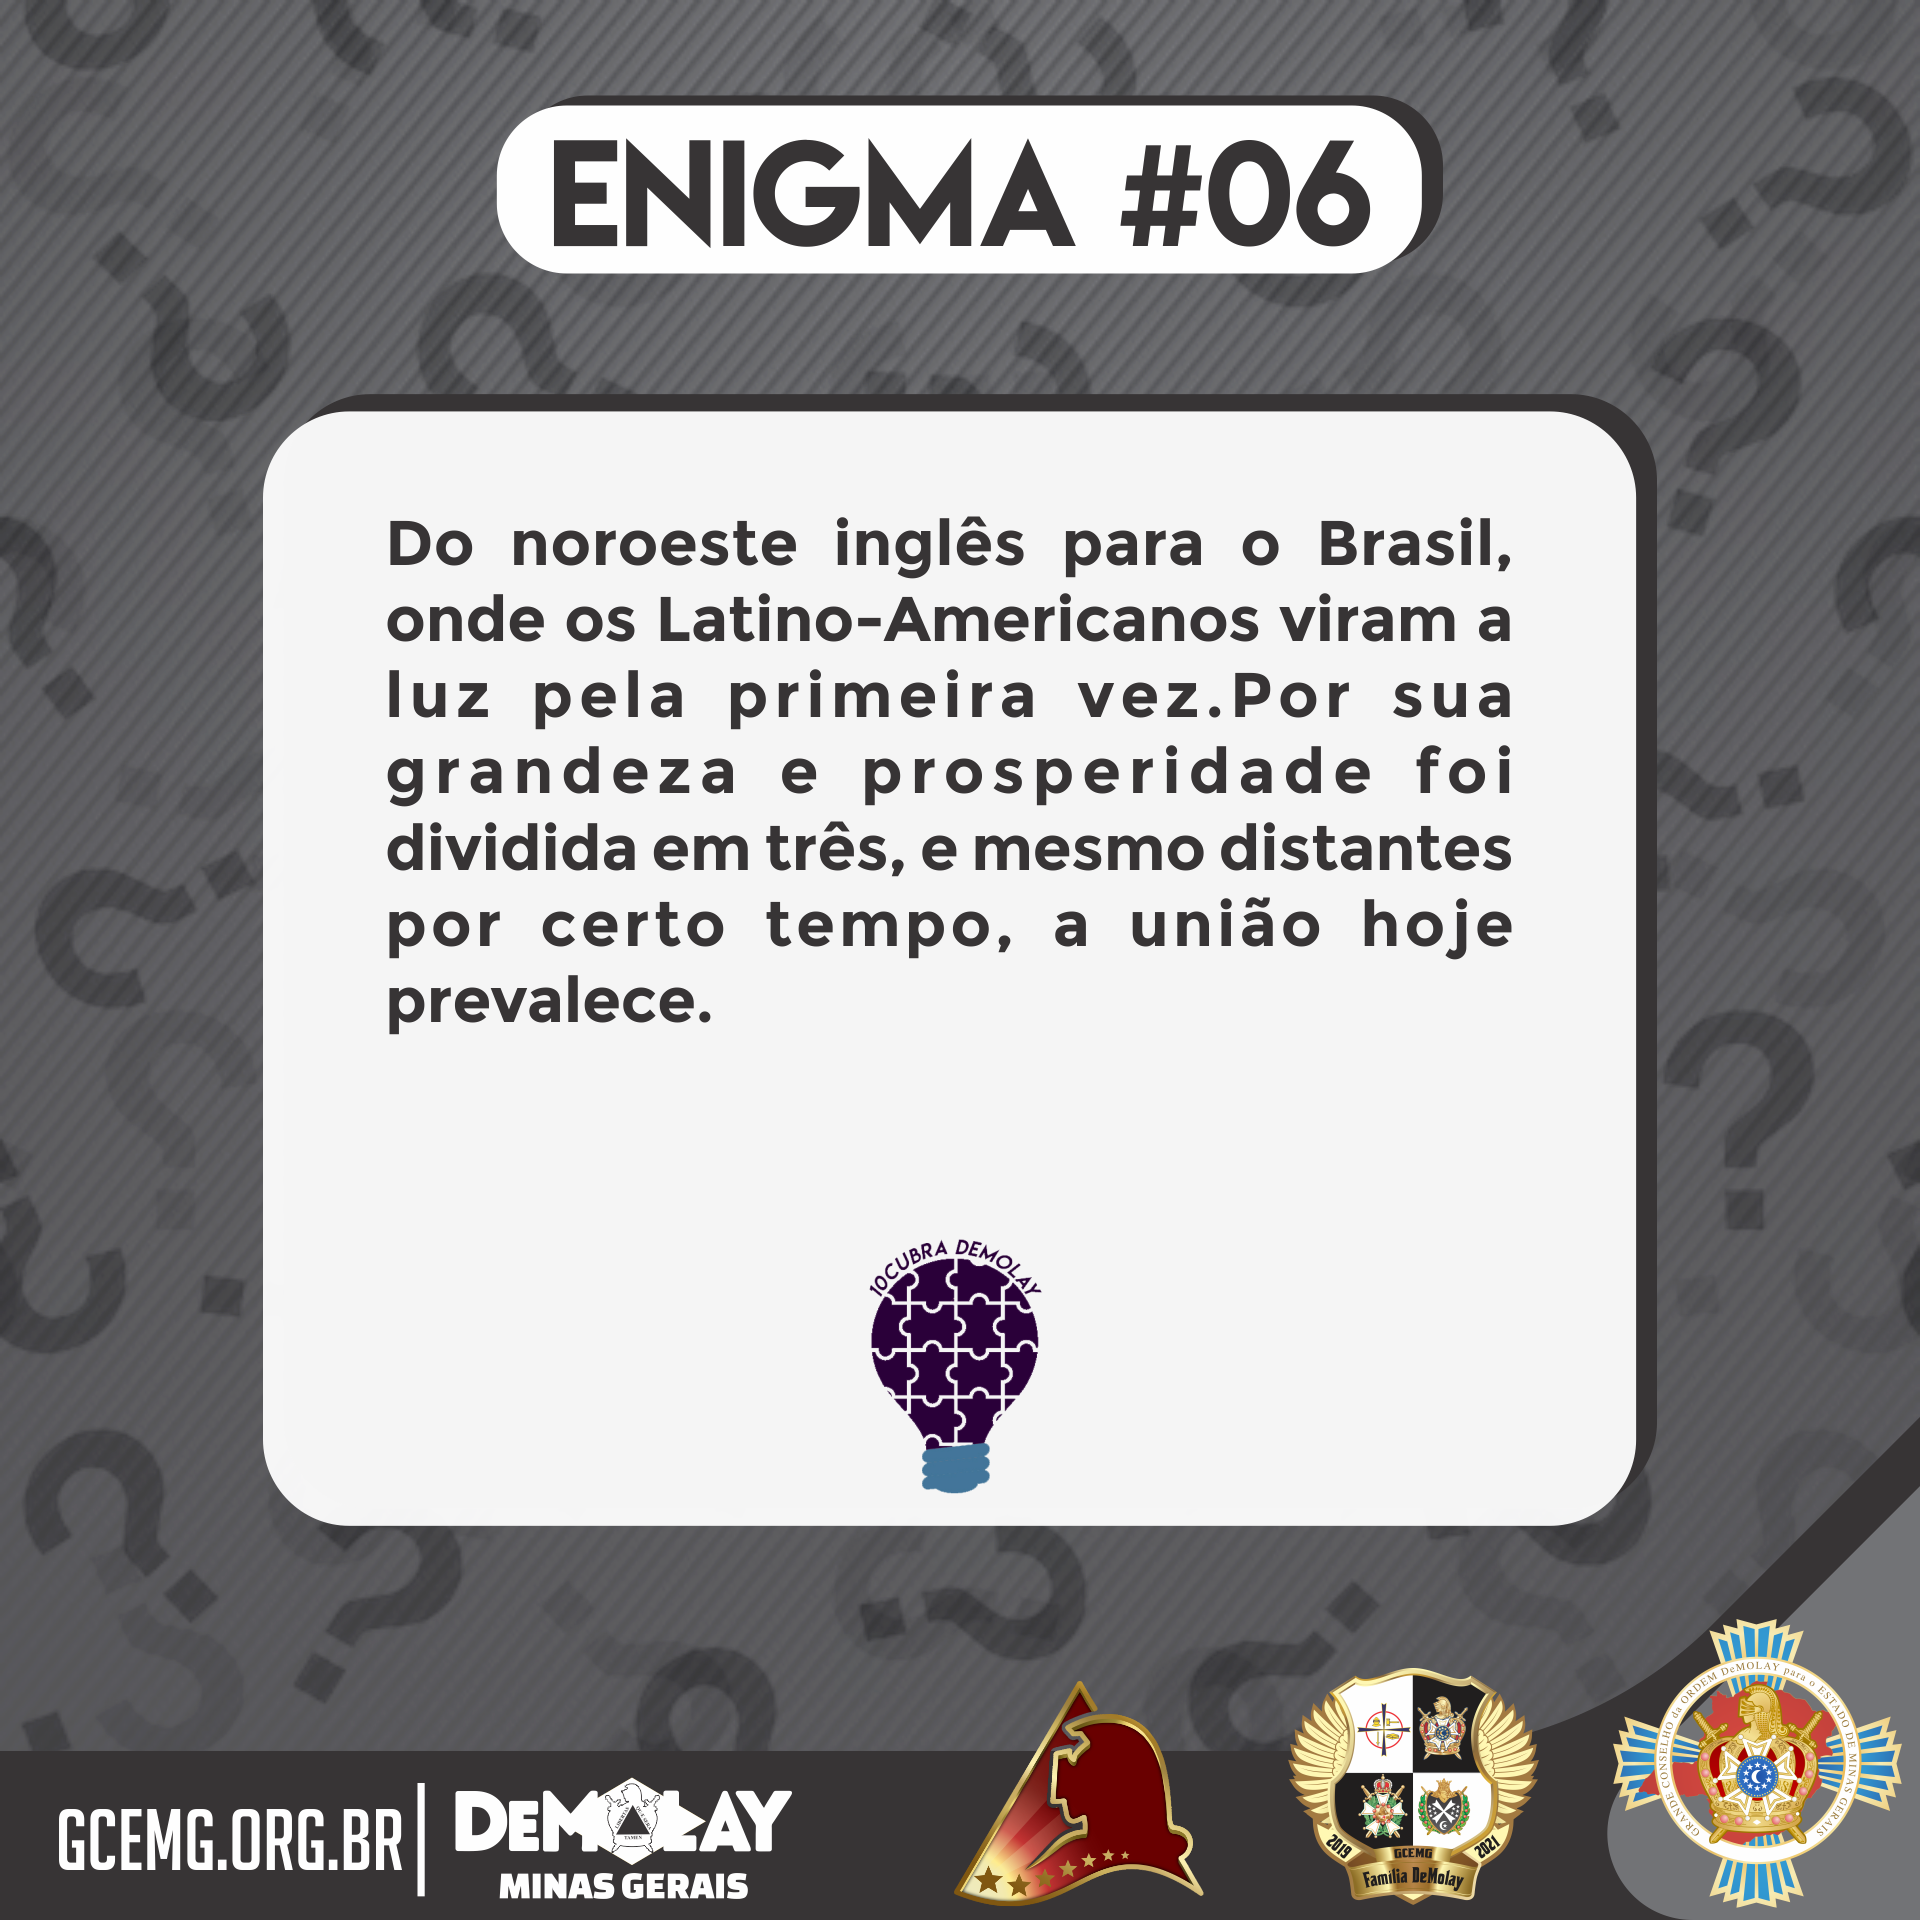 10cubra DeMolay - Enigma #06